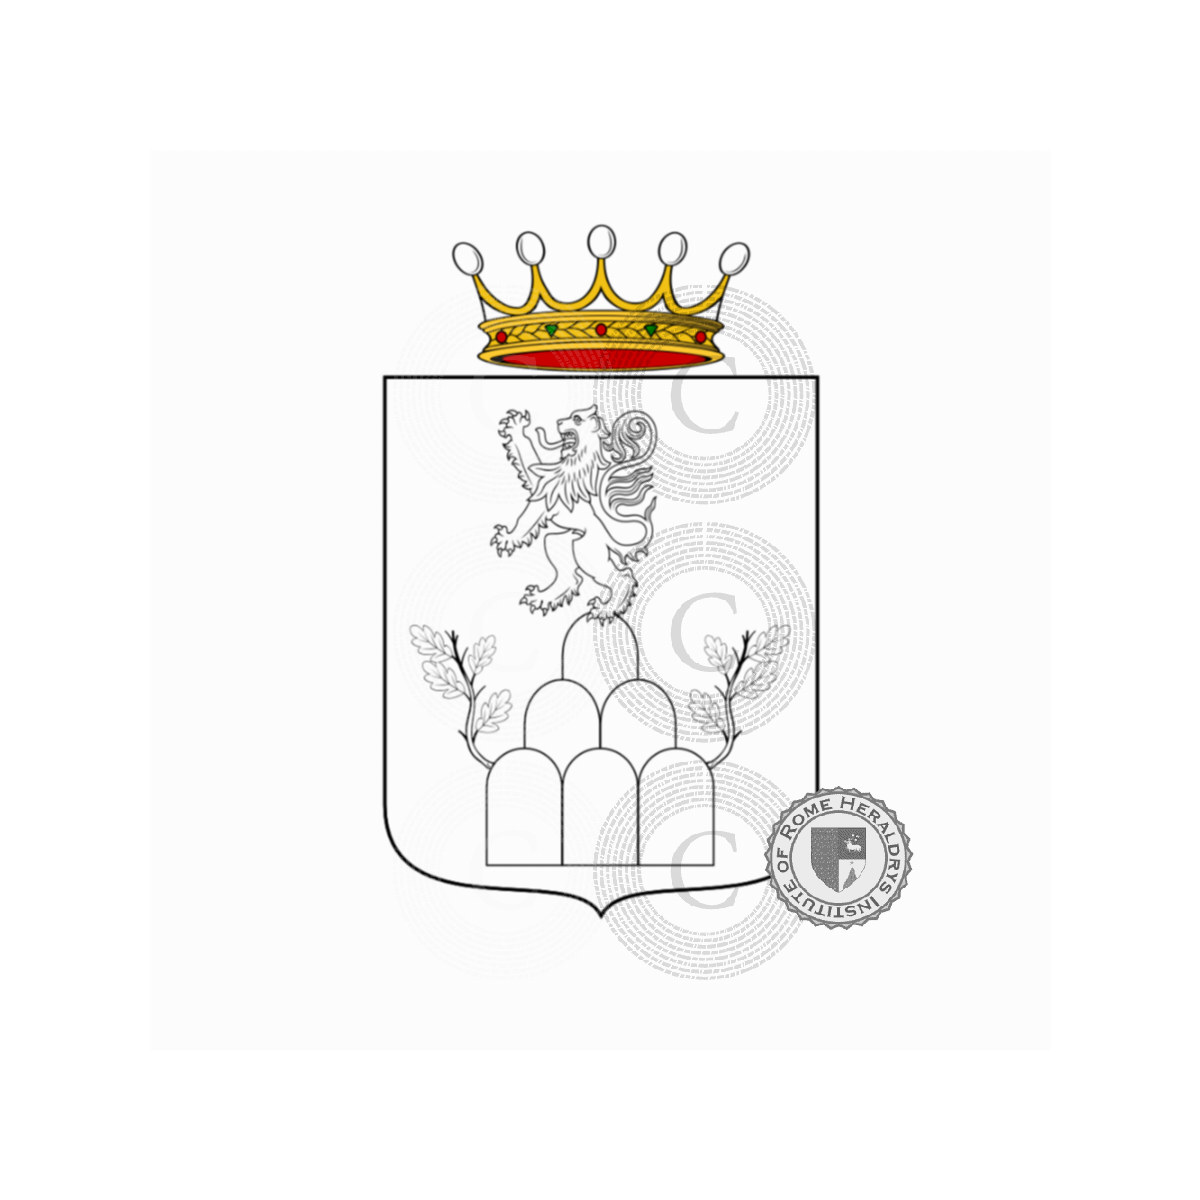 Wappen der FamilieBarletti, Barlet,Barlettai,Barletti,Barletto